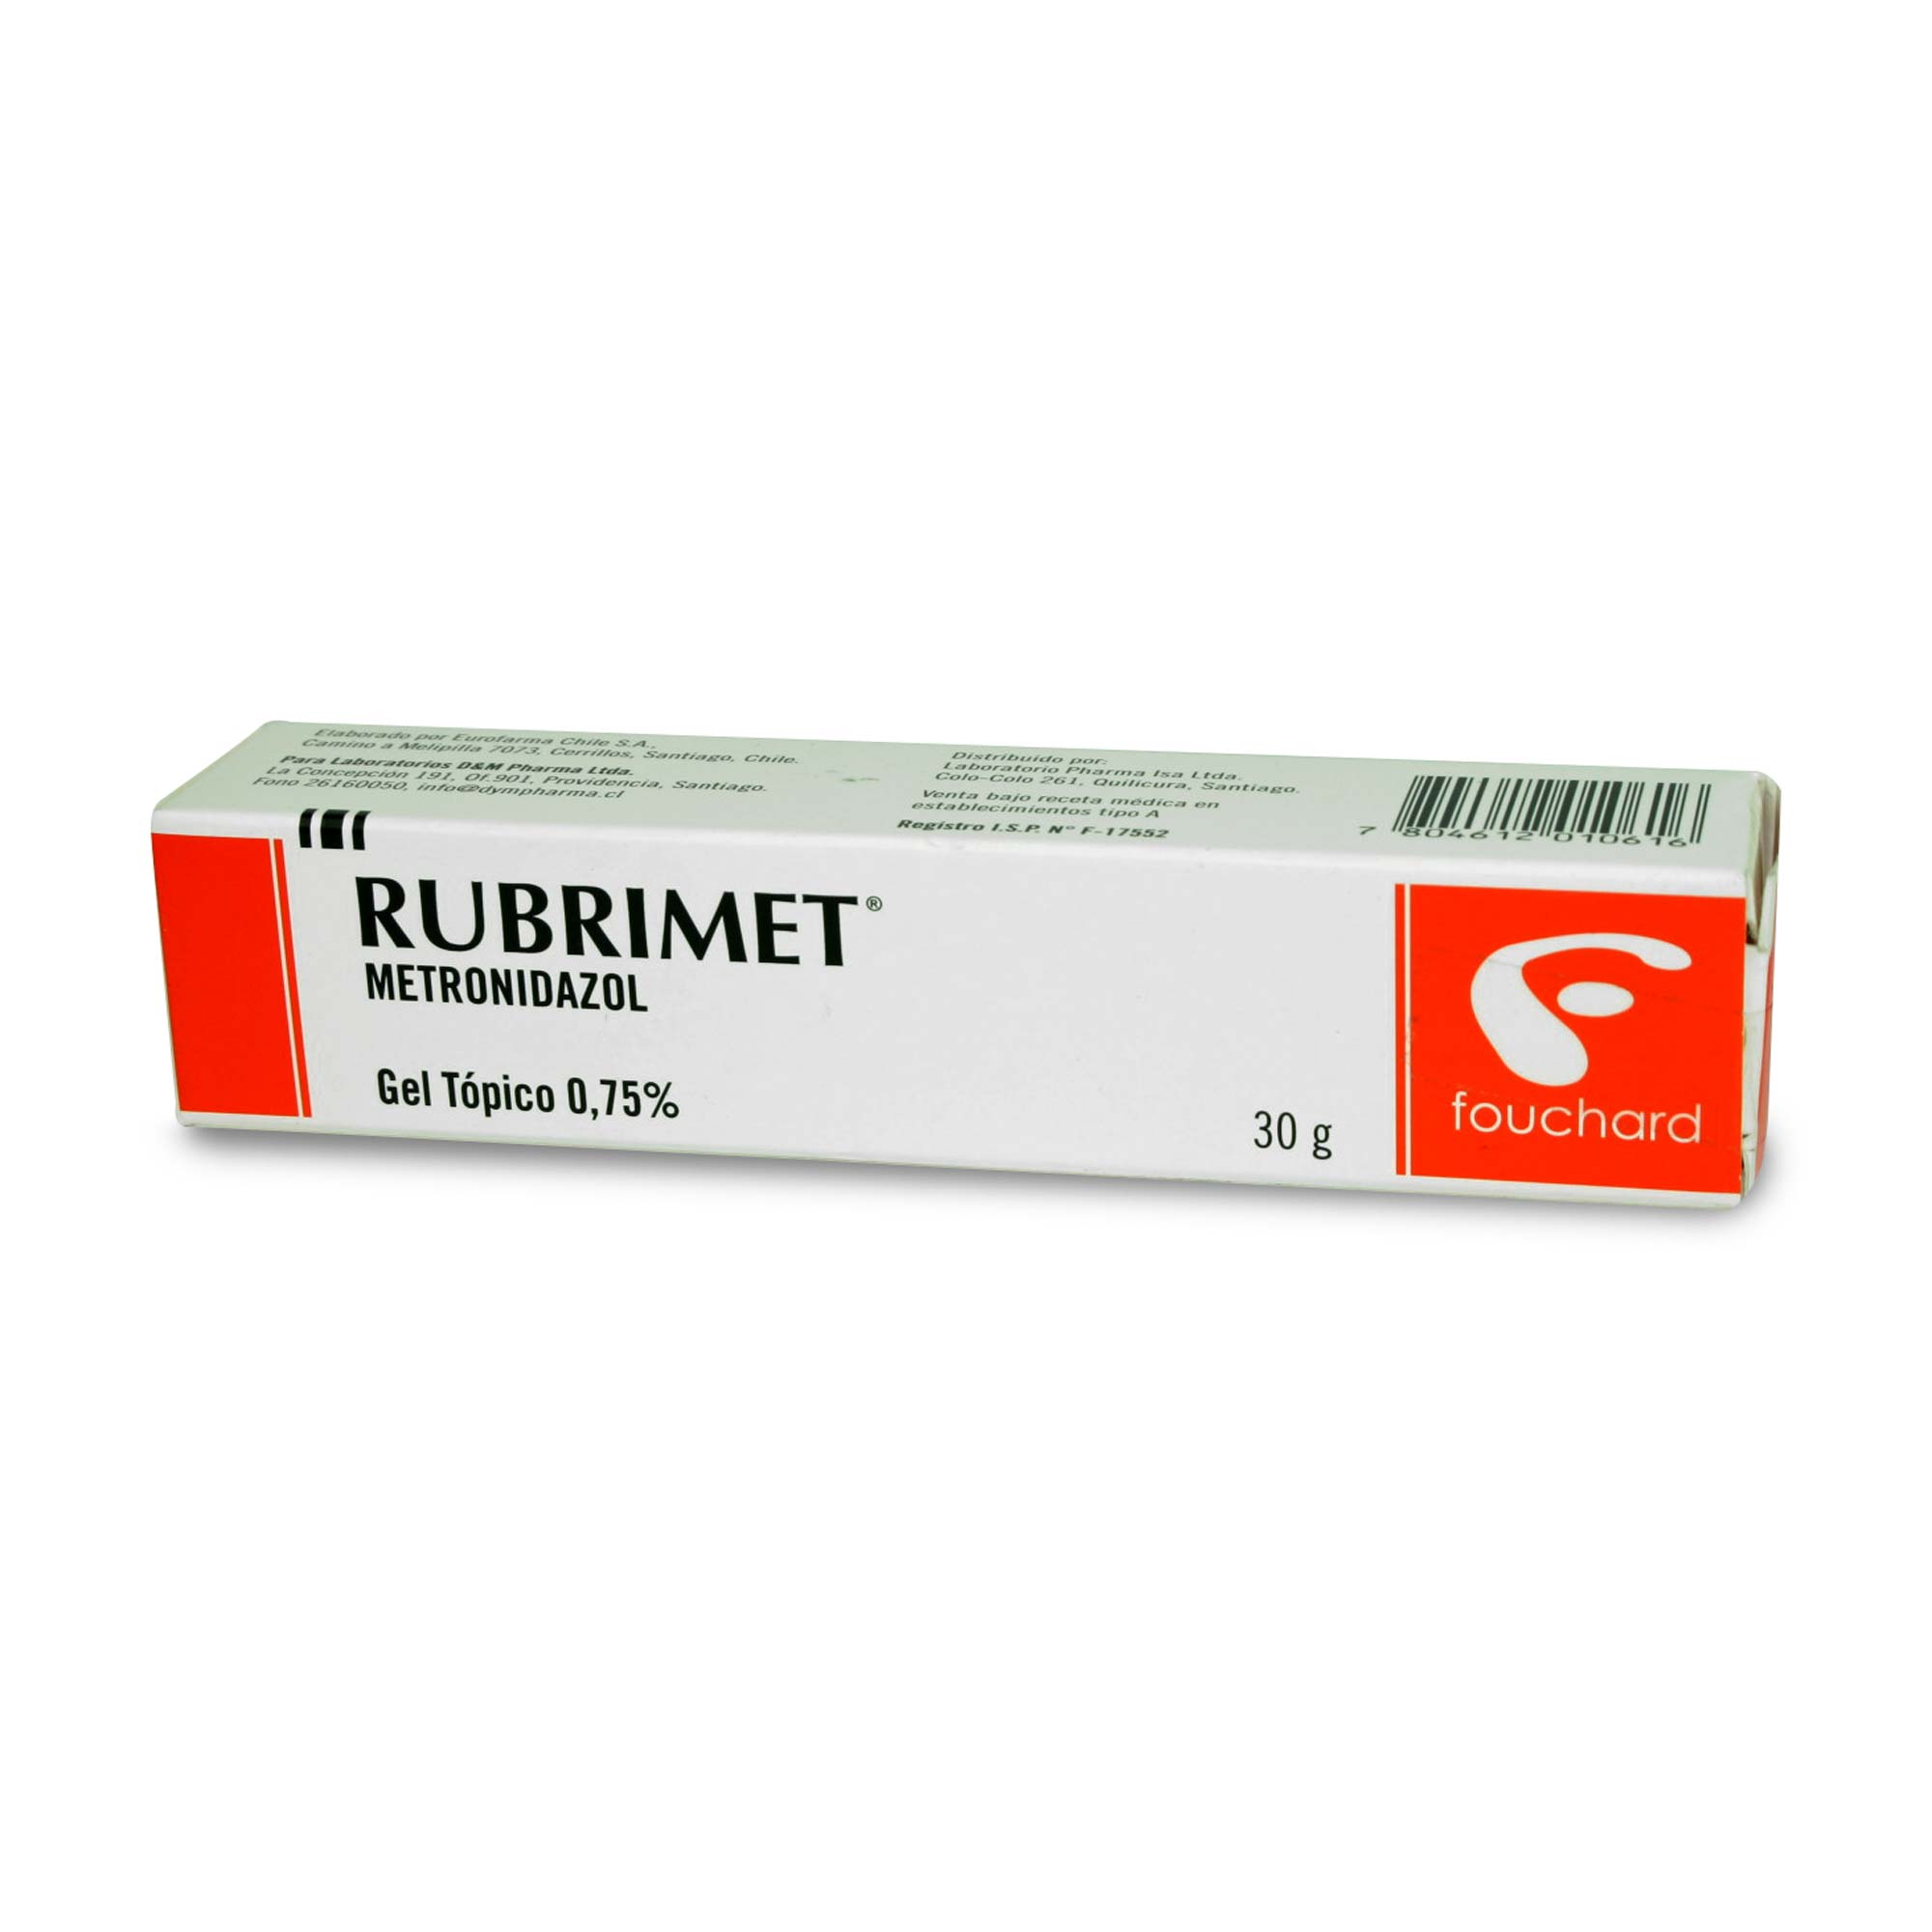 Rubrimet Metronidazol 0,75% Gel Tópico 30 gr | Farmacias Cruz Verde